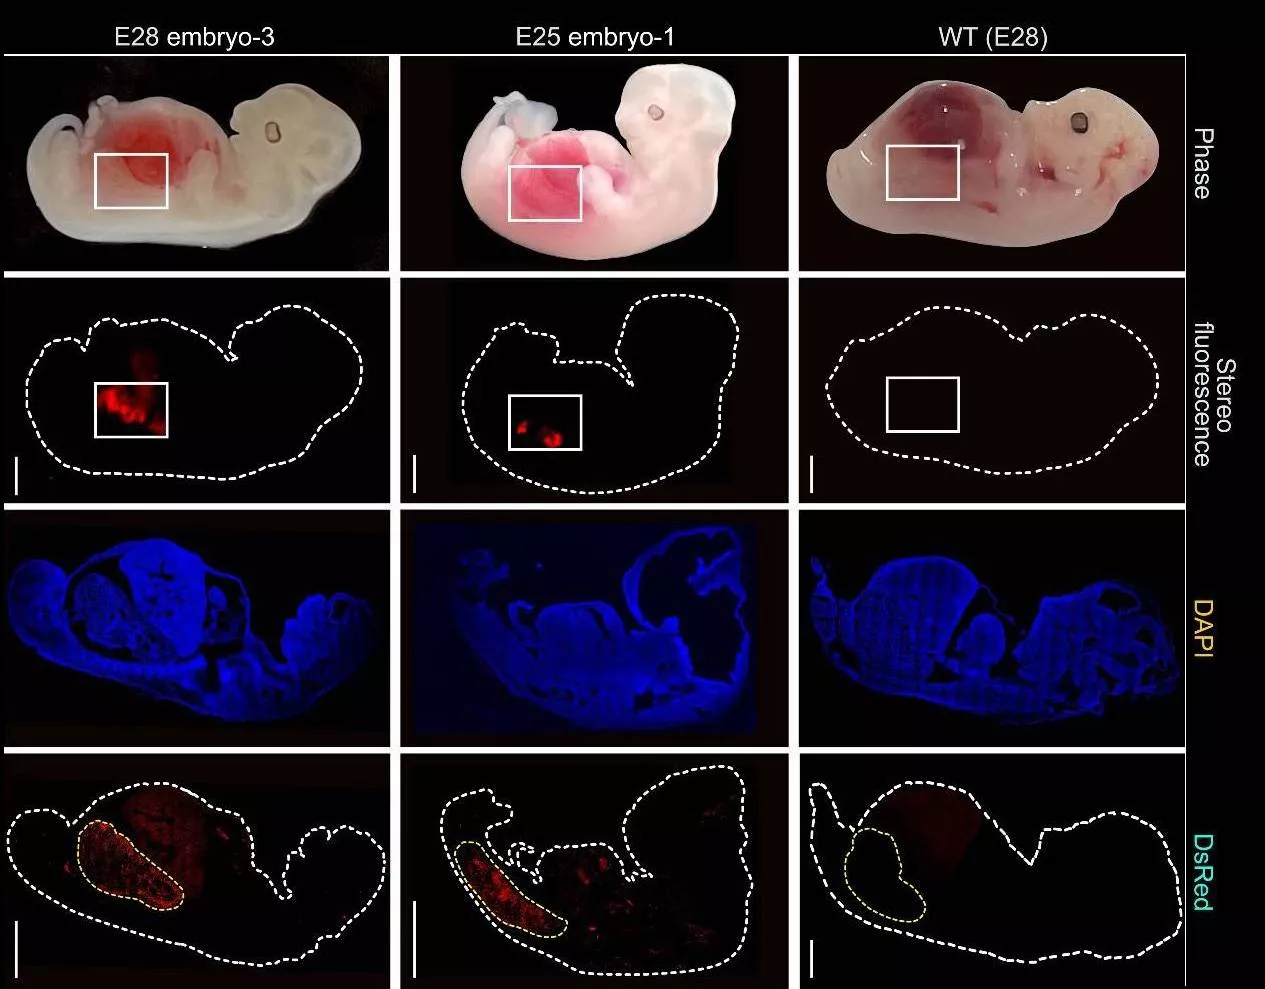 Crean rinones humanizados en embriones de cerdo durante 28 dias